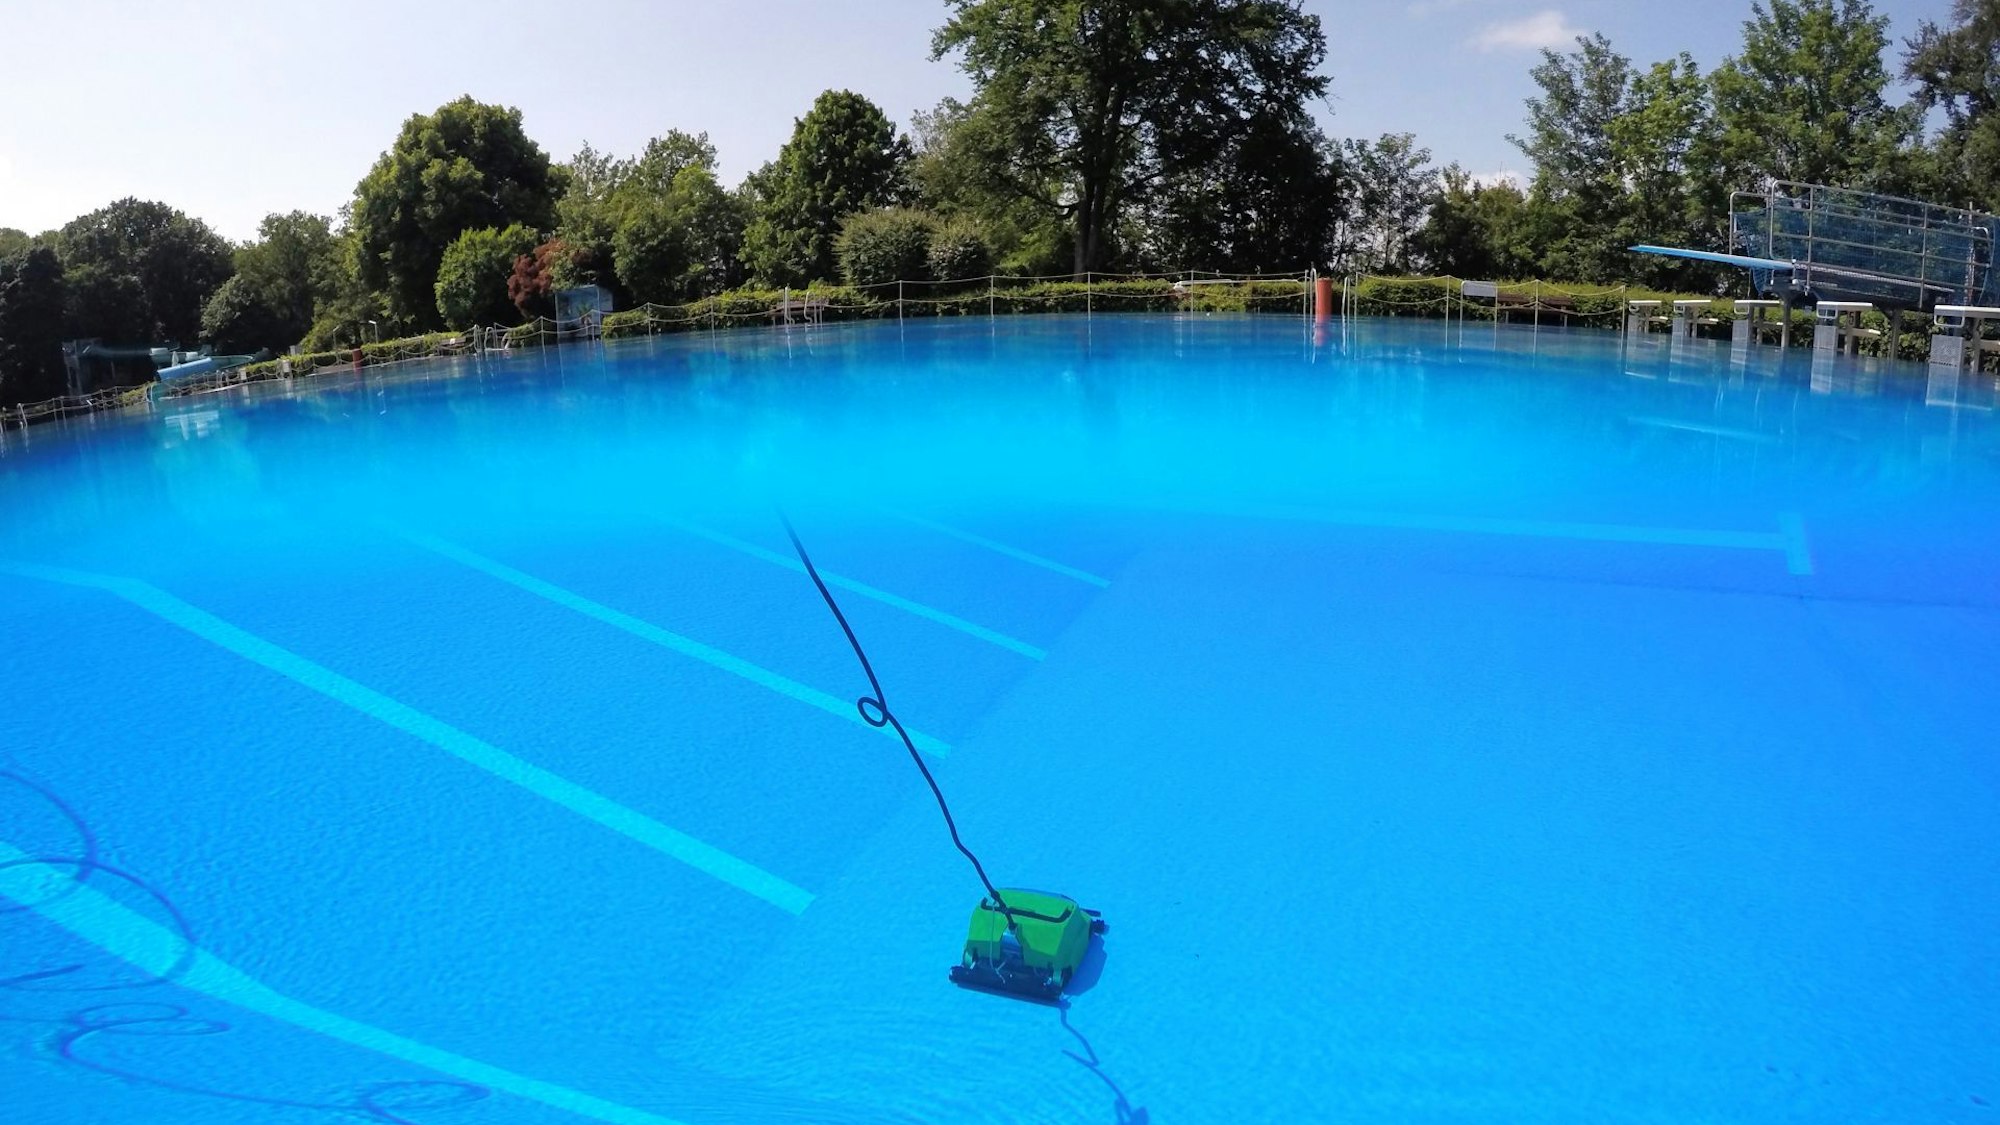 Im blauen Wasser zieht auf dem Boden des 50-Meter-Beckens eine gelbe Reinigungsmaschine ihre Bahnen. Am oberen Bildrand sind Bäume und Sträucher zu sehen, rechts am Rand ein Sprungbrett.